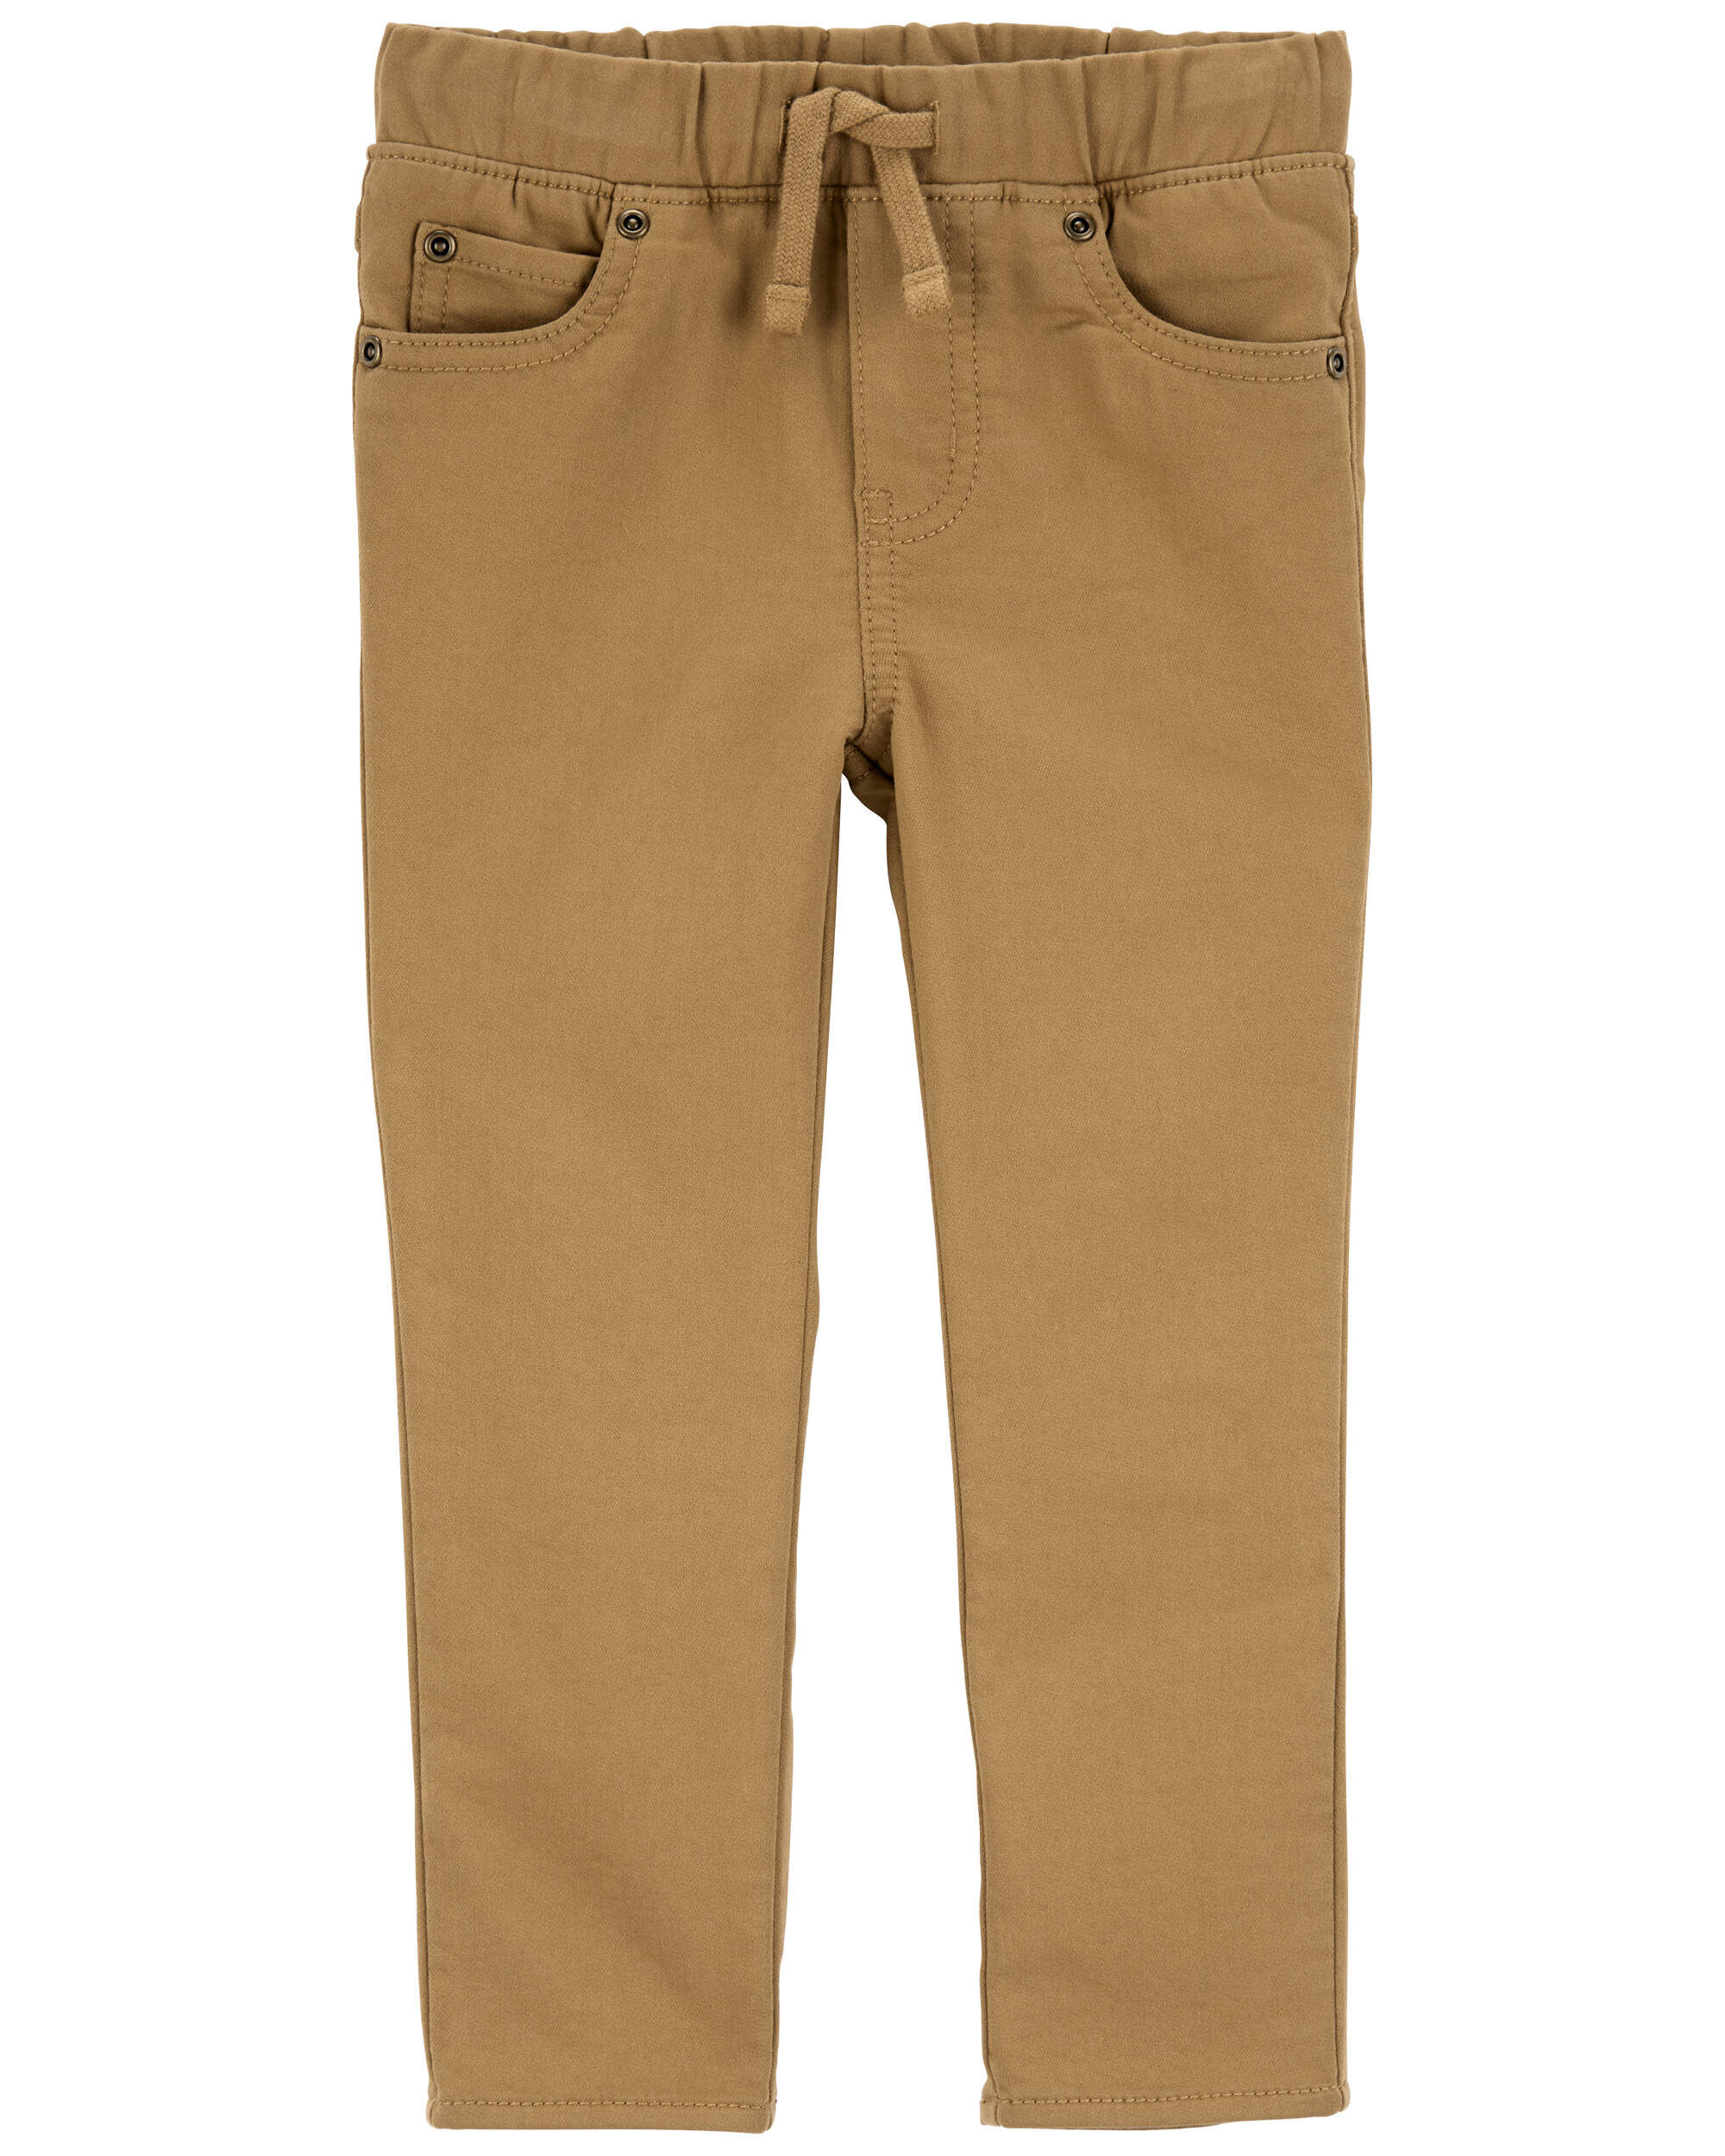 Повседневные брюки Carter's Для мальчиков Toddler Pull-On Khaki Pants Carter's